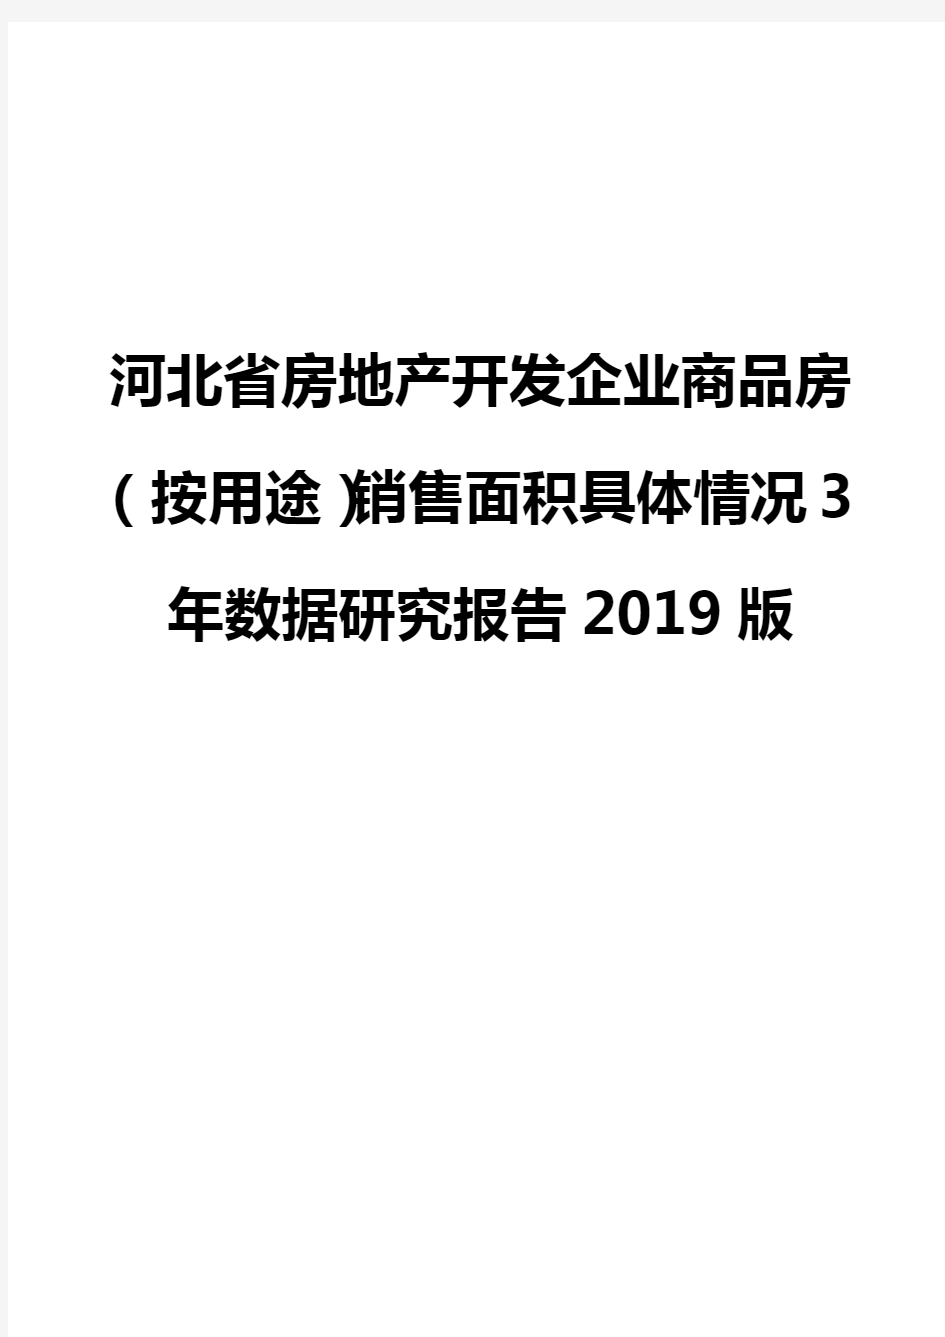 河北省房地产开发企业商品房(按用途)销售面积具体情况3年数据研究报告2019版